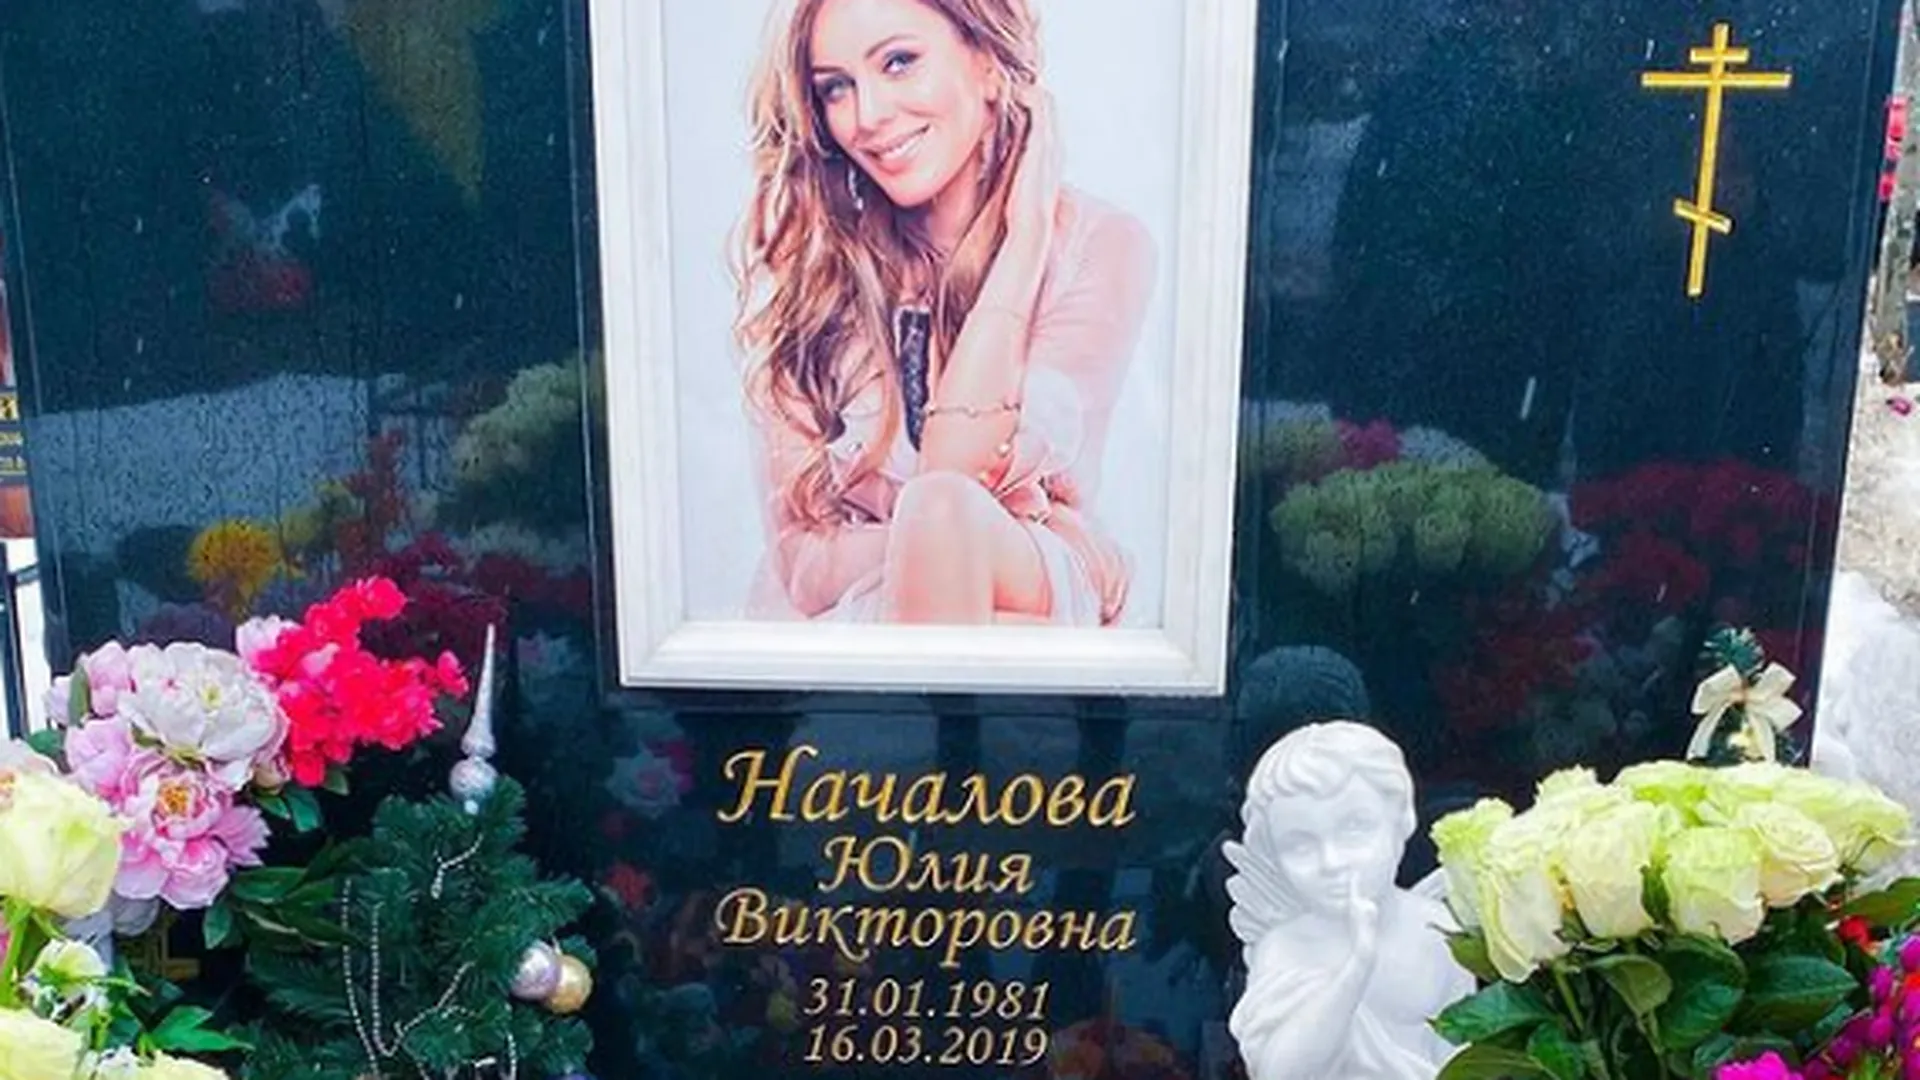 Мама почтила память Юлии Началовой, а подруга показала могилу певицы во вторую годовщину смерти